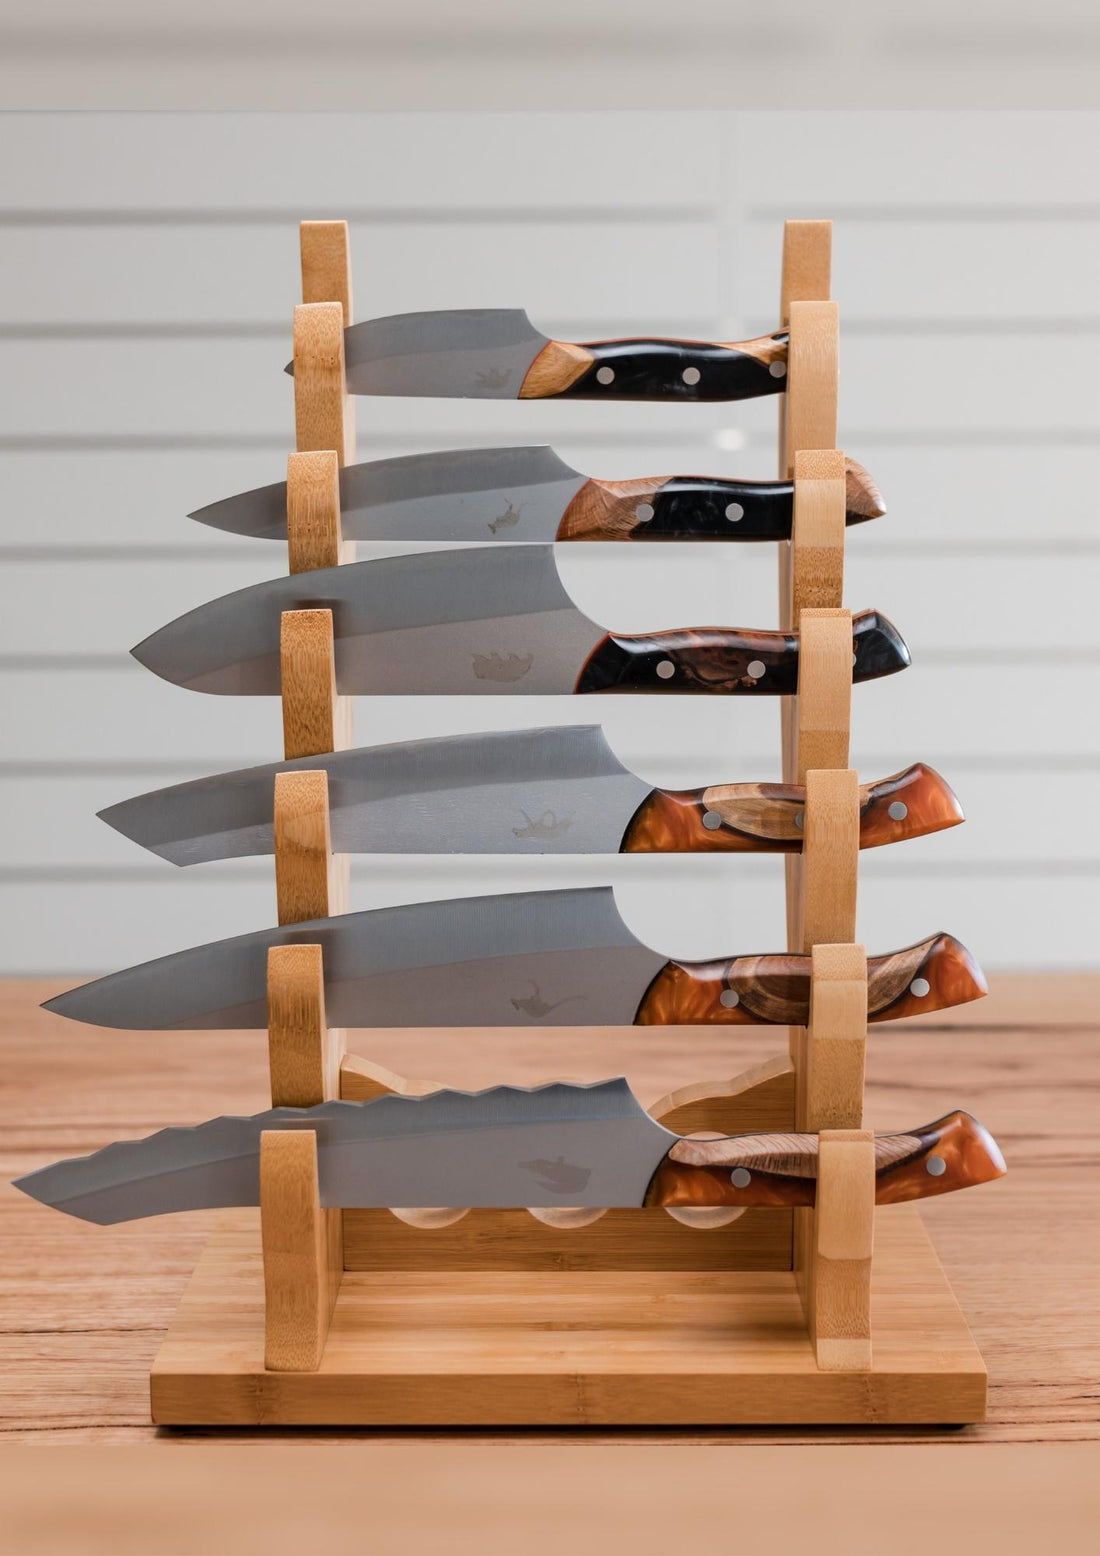 6 Knife "Antler" Knife Rack - Koi Knives